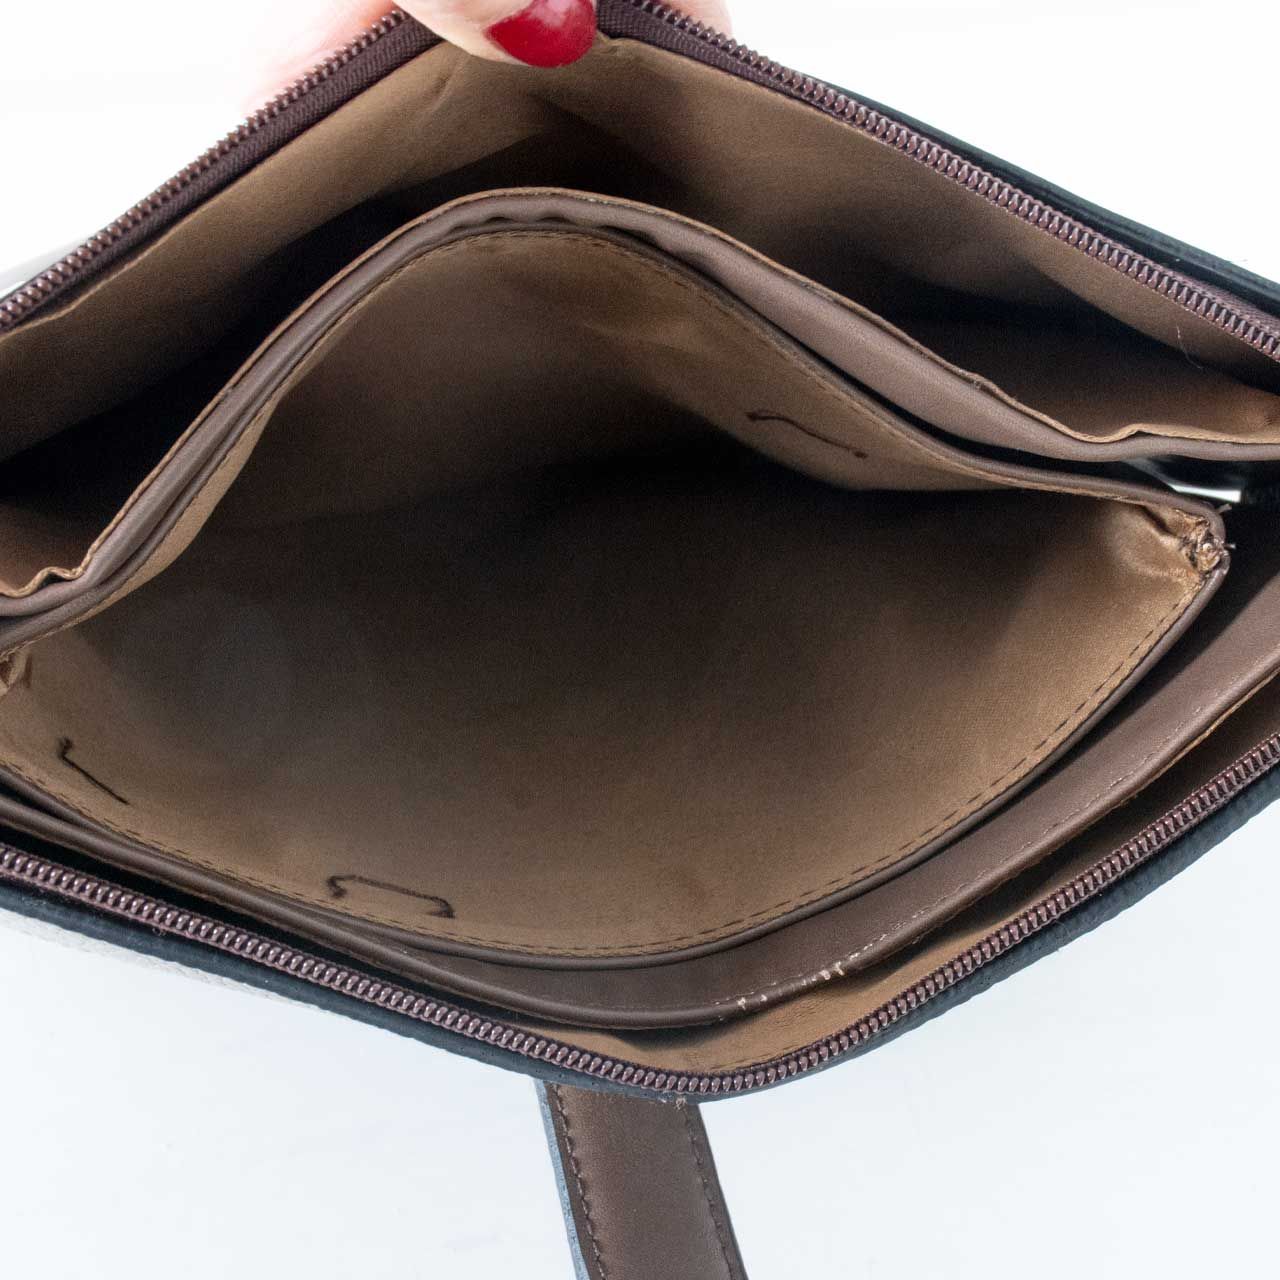 کیف دوشی زنانه پارینه چرم مدل plv222-14 -  - 8